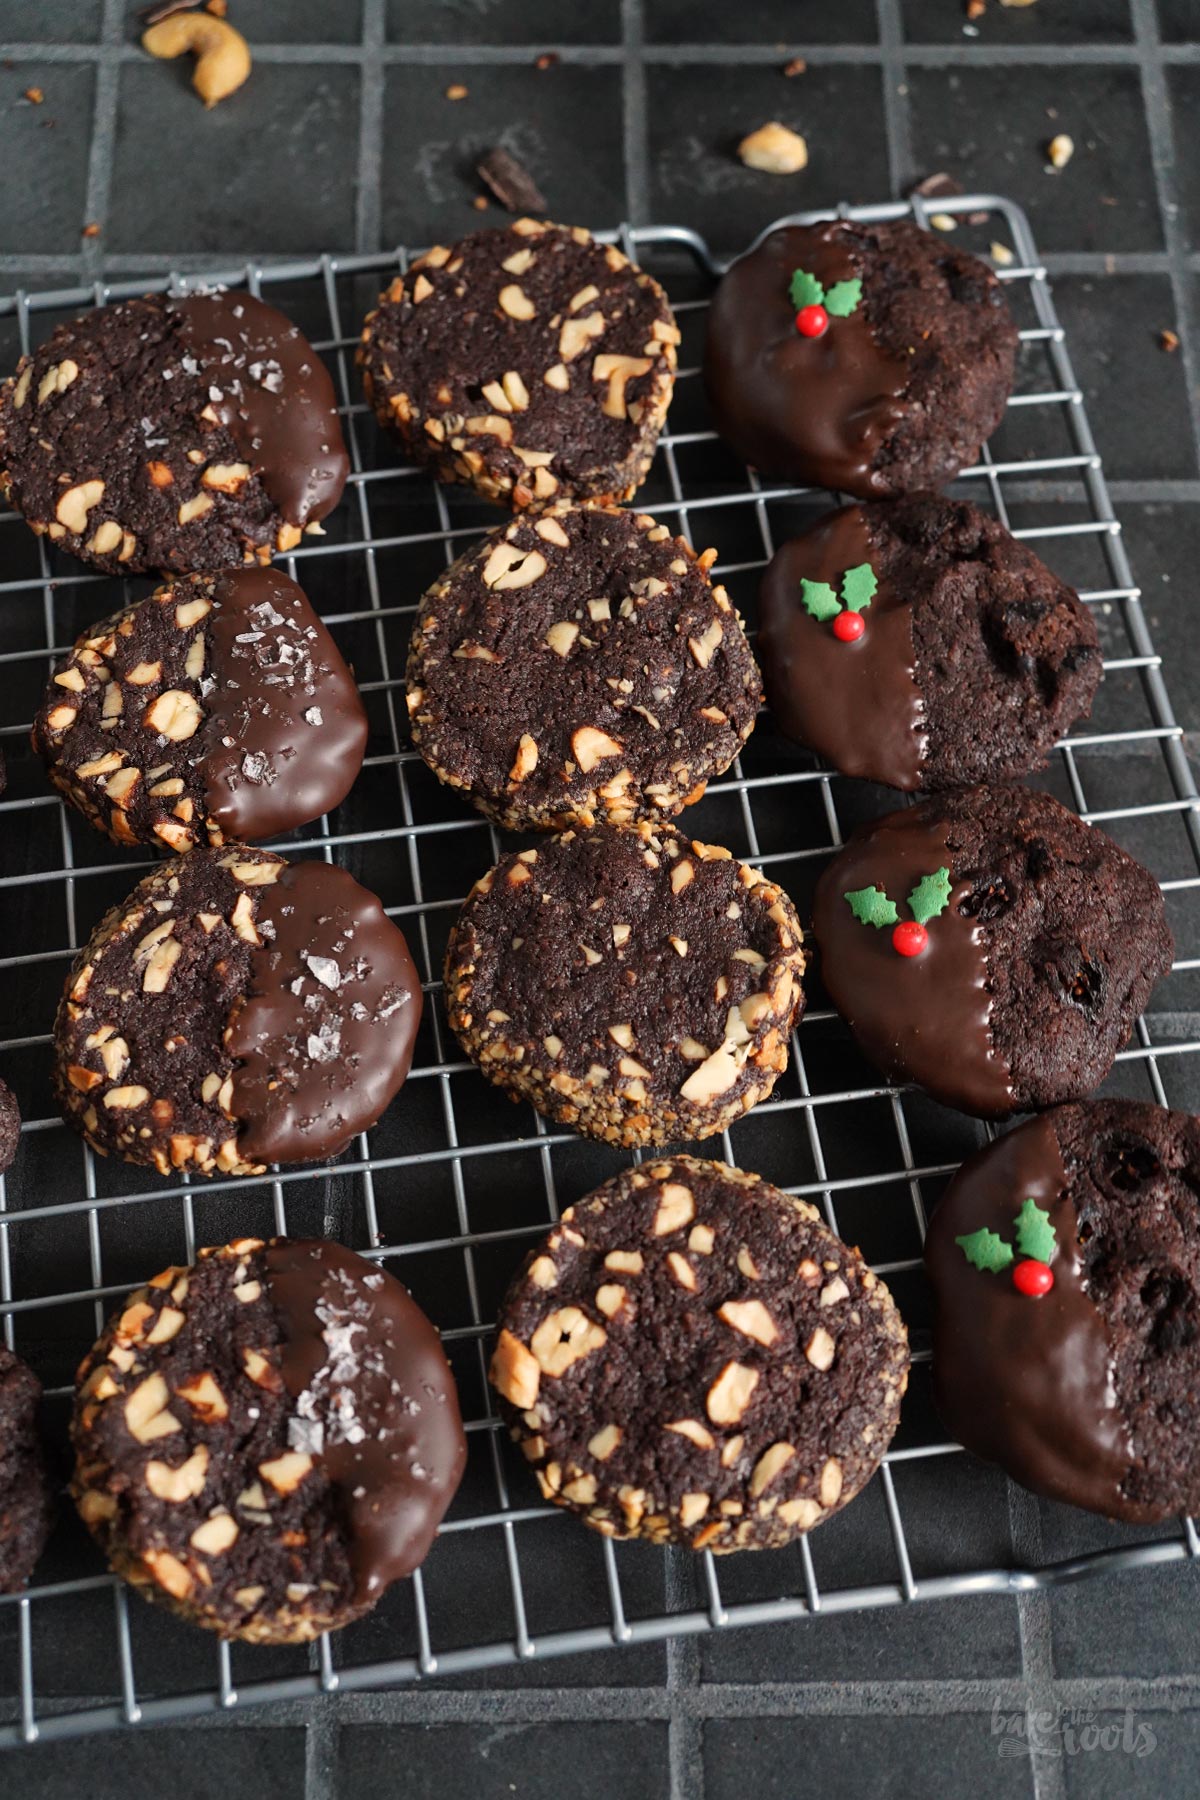 Slice 'n' Bake X-mas Chocolate Cookies (vegan) | Bake to the roots